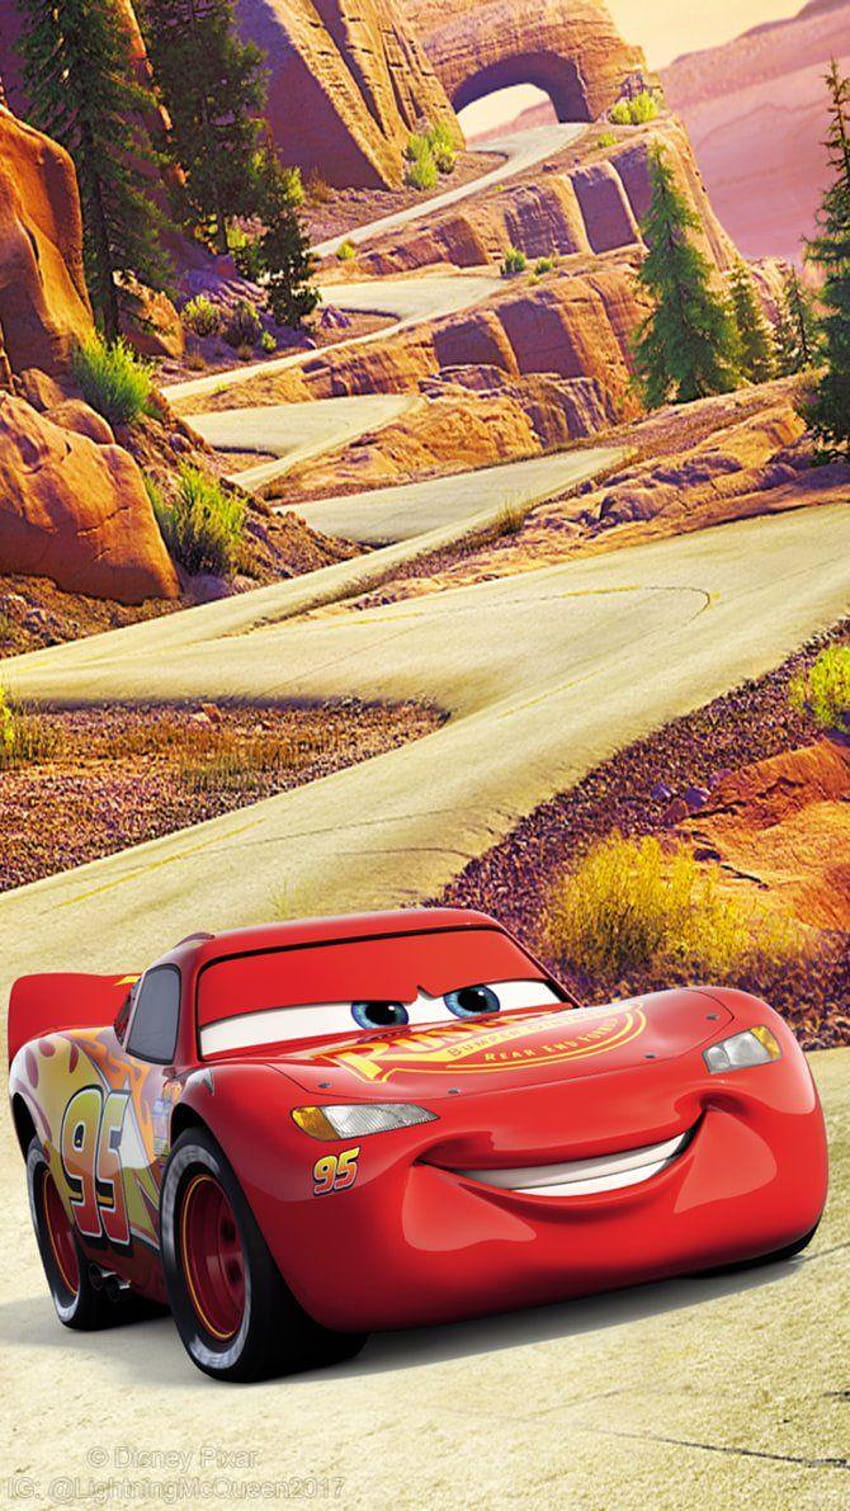 3 Lightning McQueen, lightning mcqueen iphone HD phone wallpaper